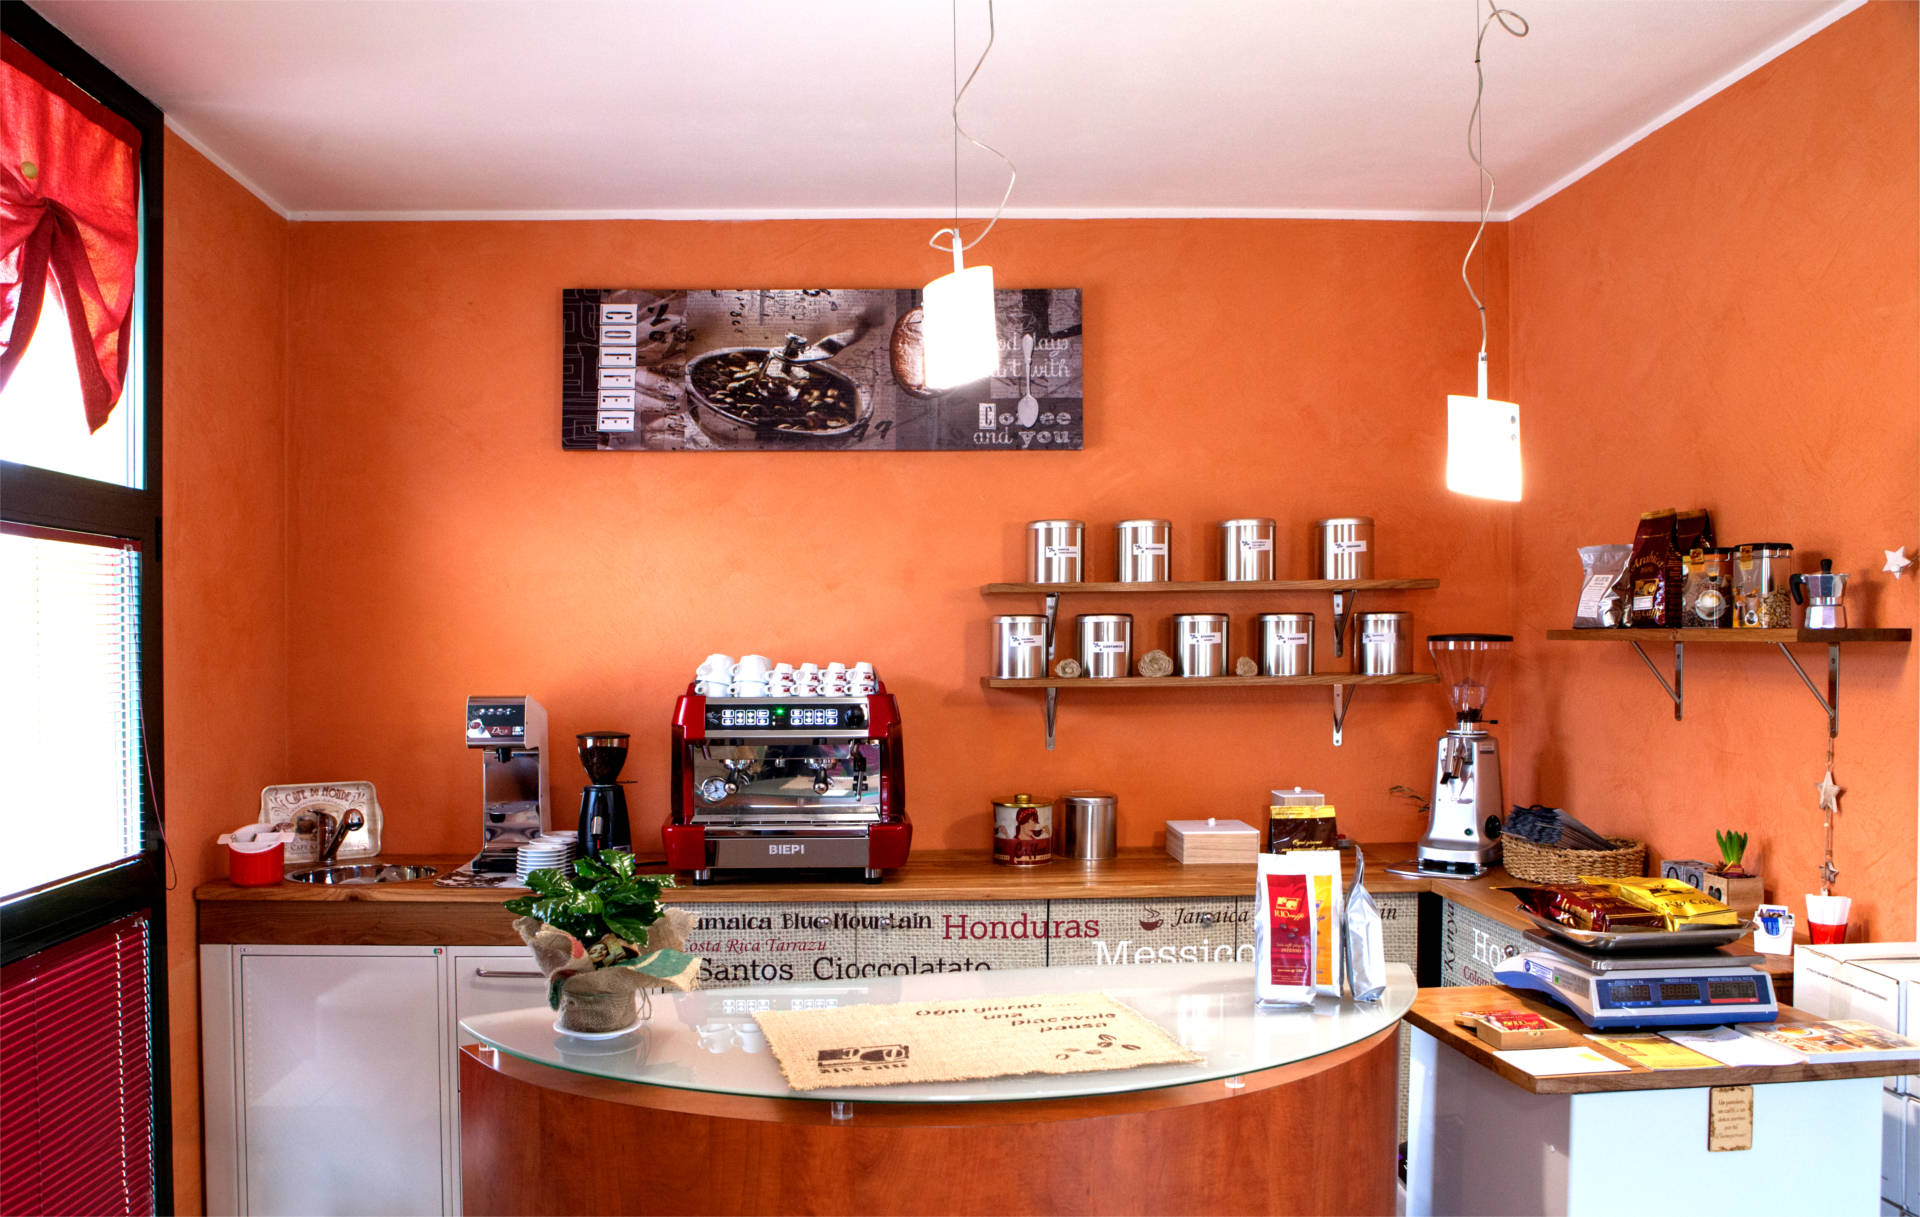 Visita lo spaccio aziendale Rio Caffè, potrai richiedere la tua miscela artigianale personalizzata